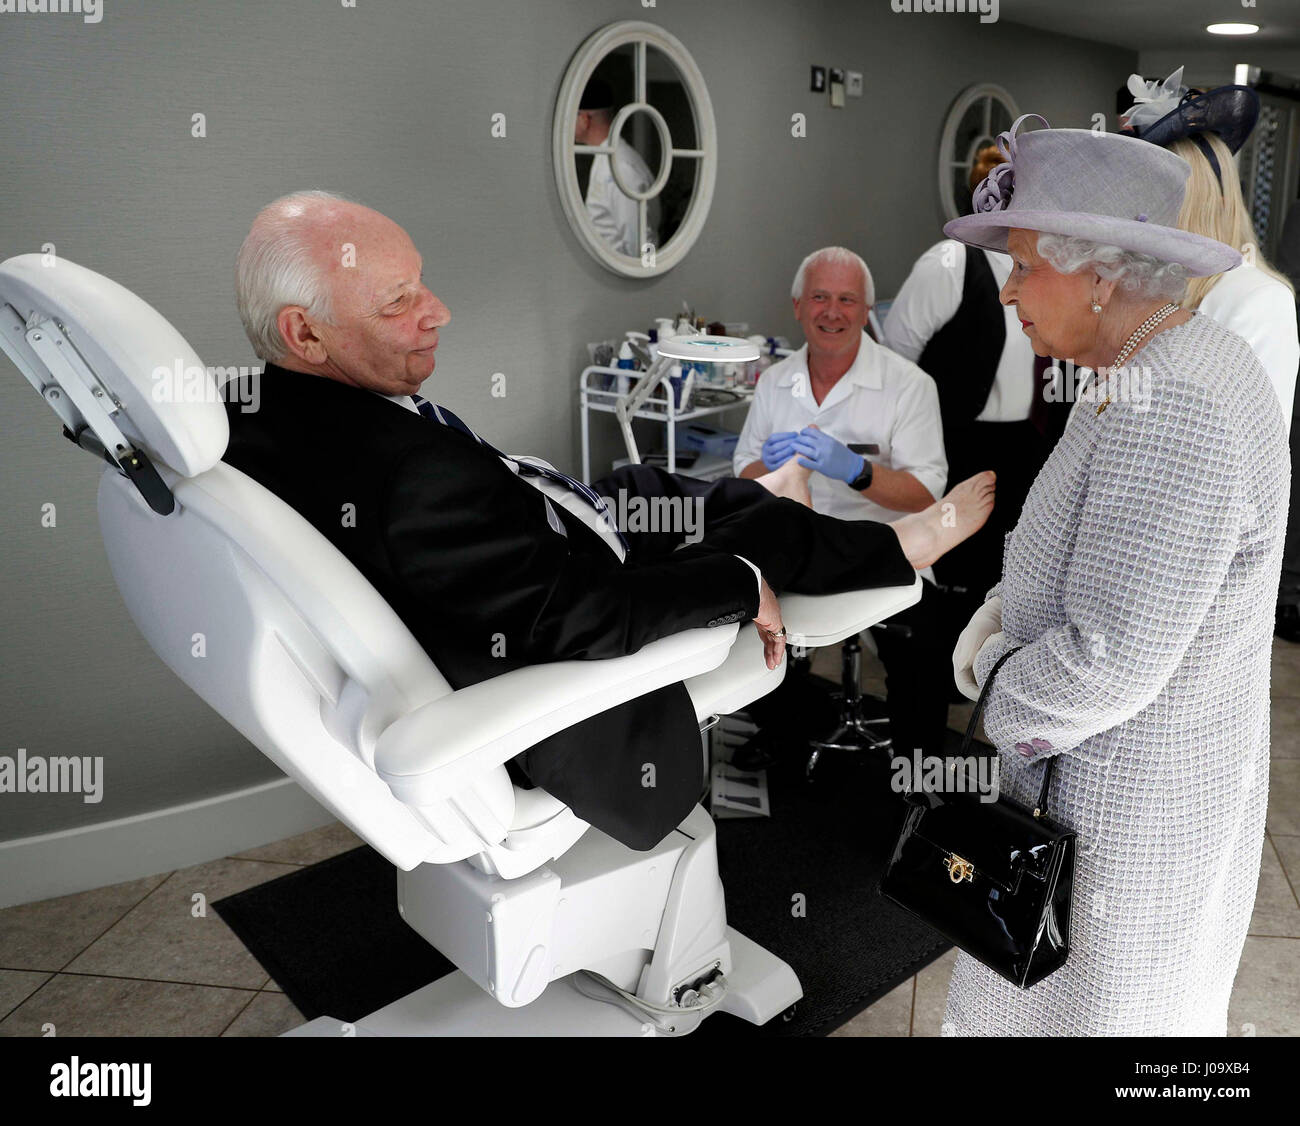 La reine Elizabeth II parle à un résident au cours d'une visite des installations au Prieuré vue, un régime de vie autonome pour les personnes plus âgées, à Dunstable dans le cadre d'une visite à Bedfordshire. Banque D'Images